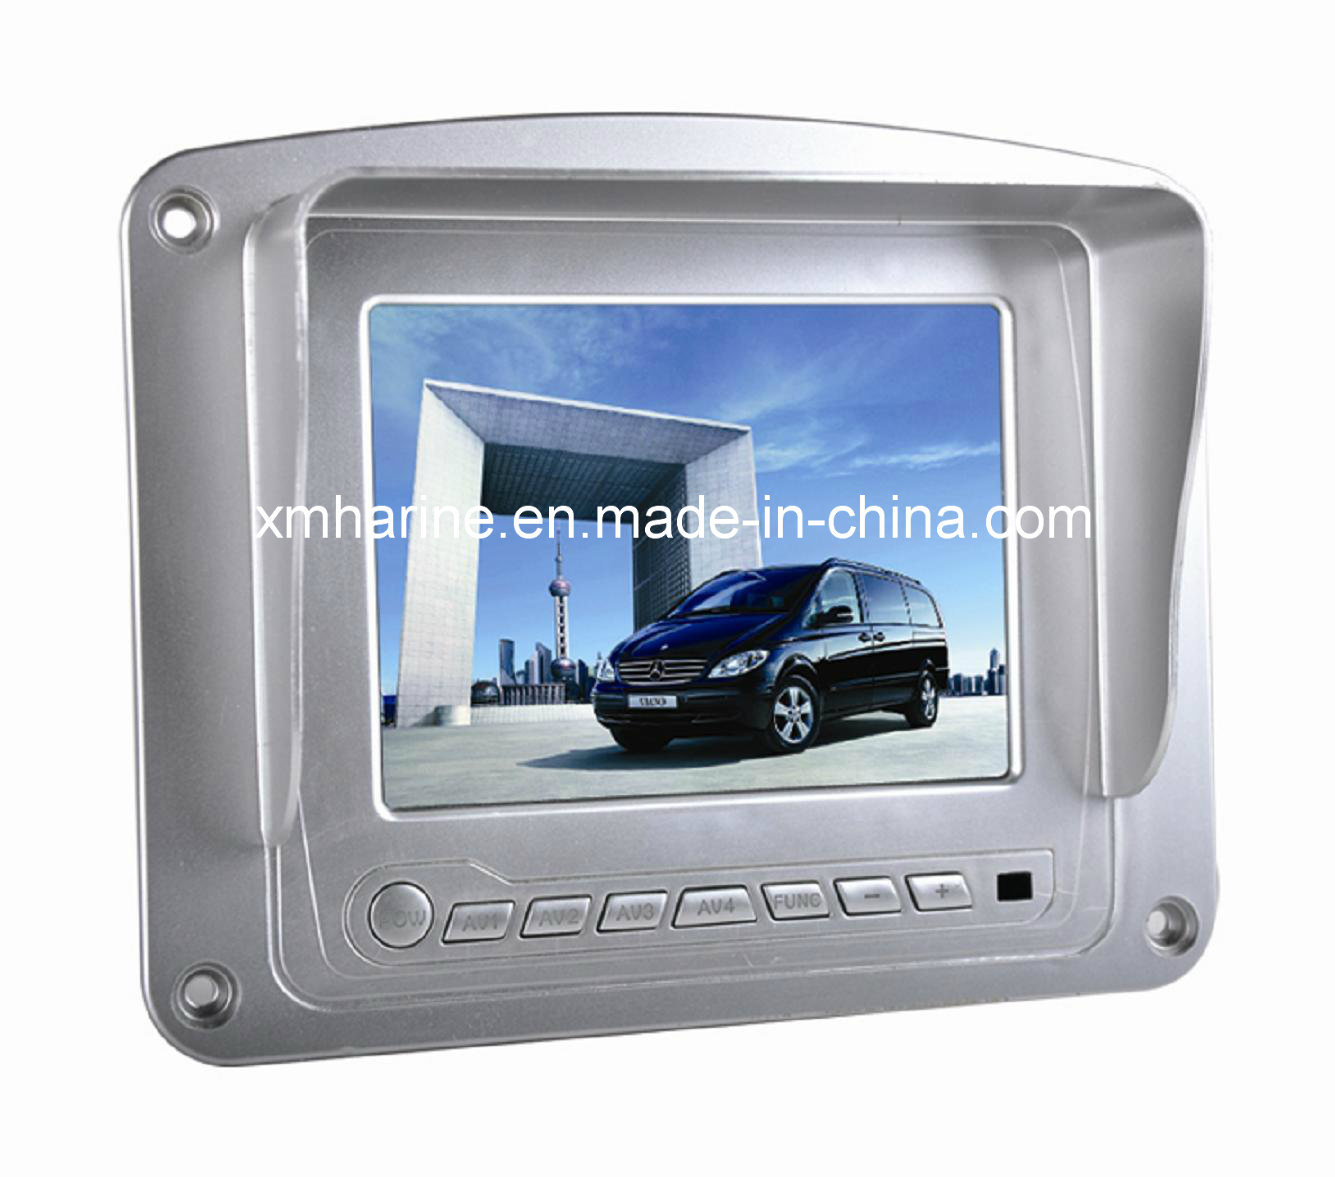 5.6 Inch Monitor Digital Car Rear View System